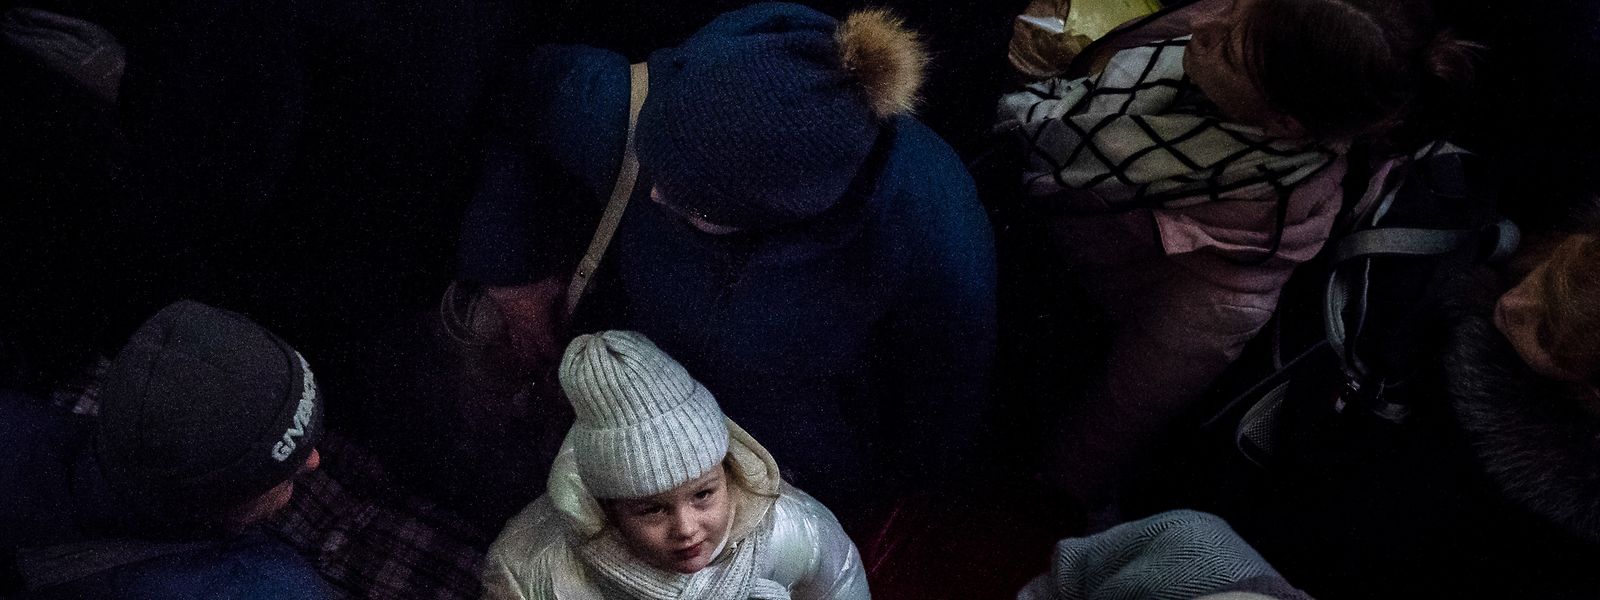 Obwohl die ukrainischen Truppen Cherson befreit haben, beschloss die Regierung, die Einwohner per Zug und Bus in andere Städte zu evakuieren.